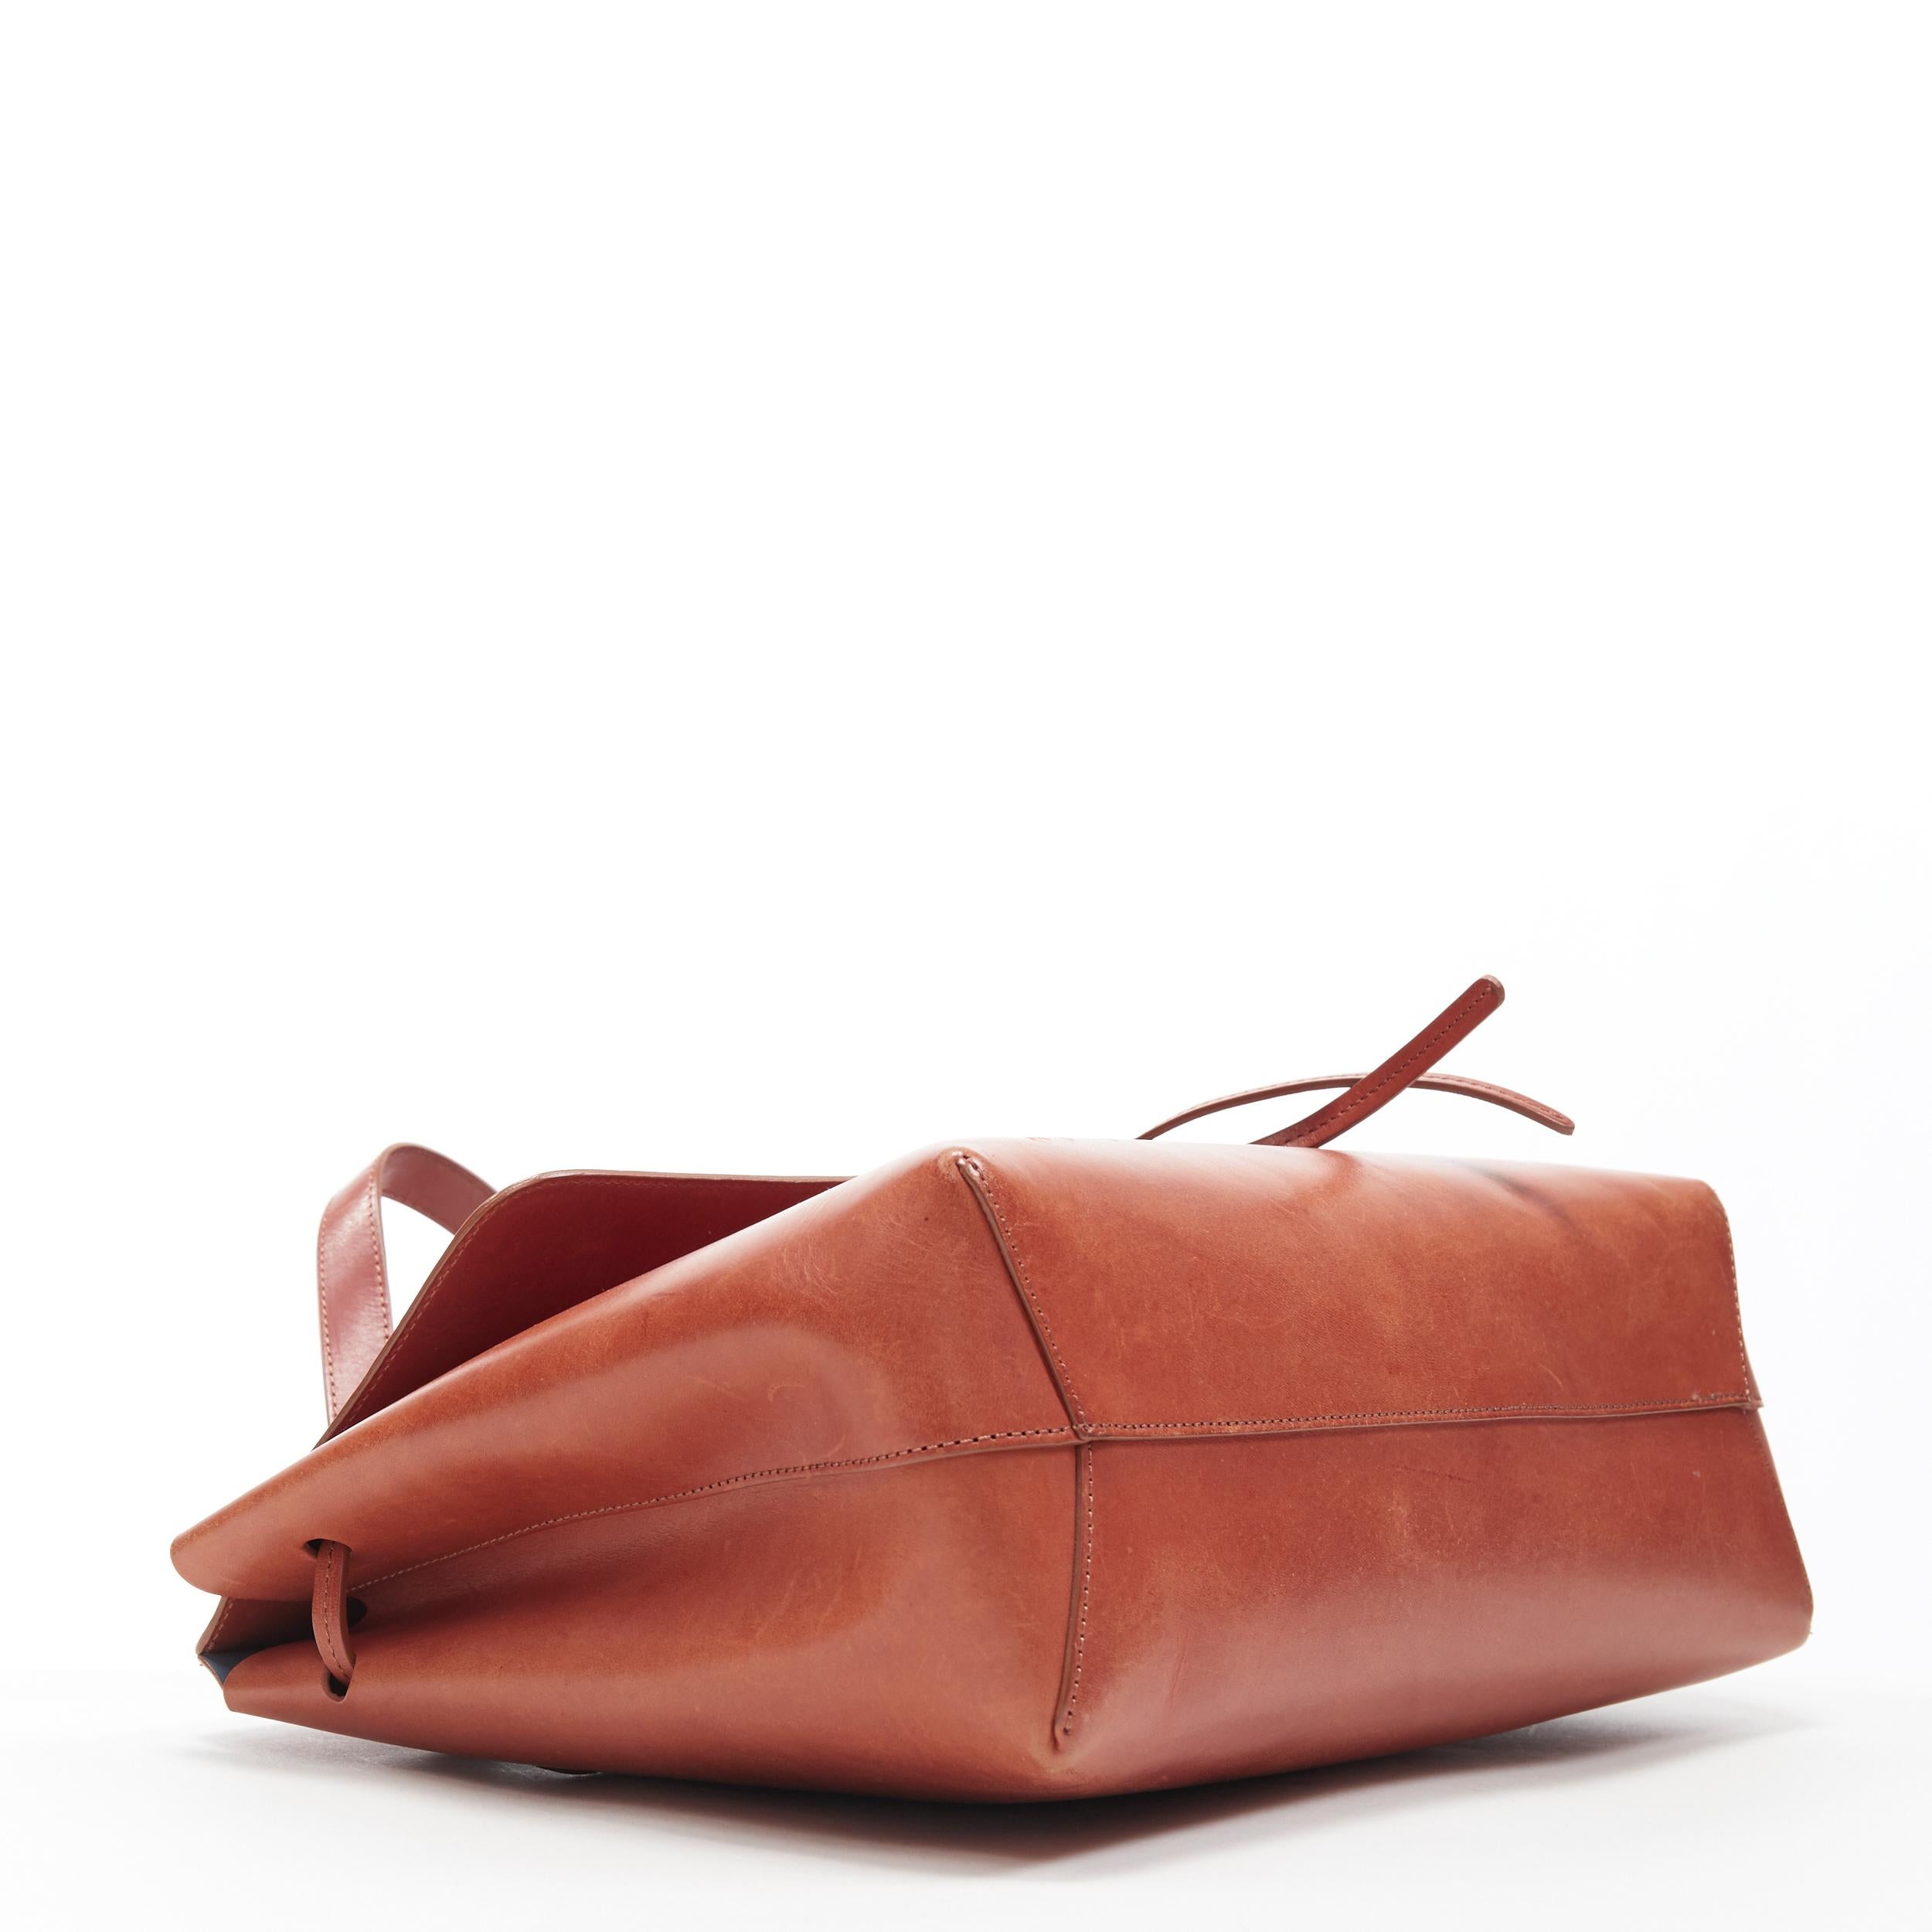 Brown MANSUR GAVRIEL Lady cognac brown smooth leather flap shoulder satchel bag